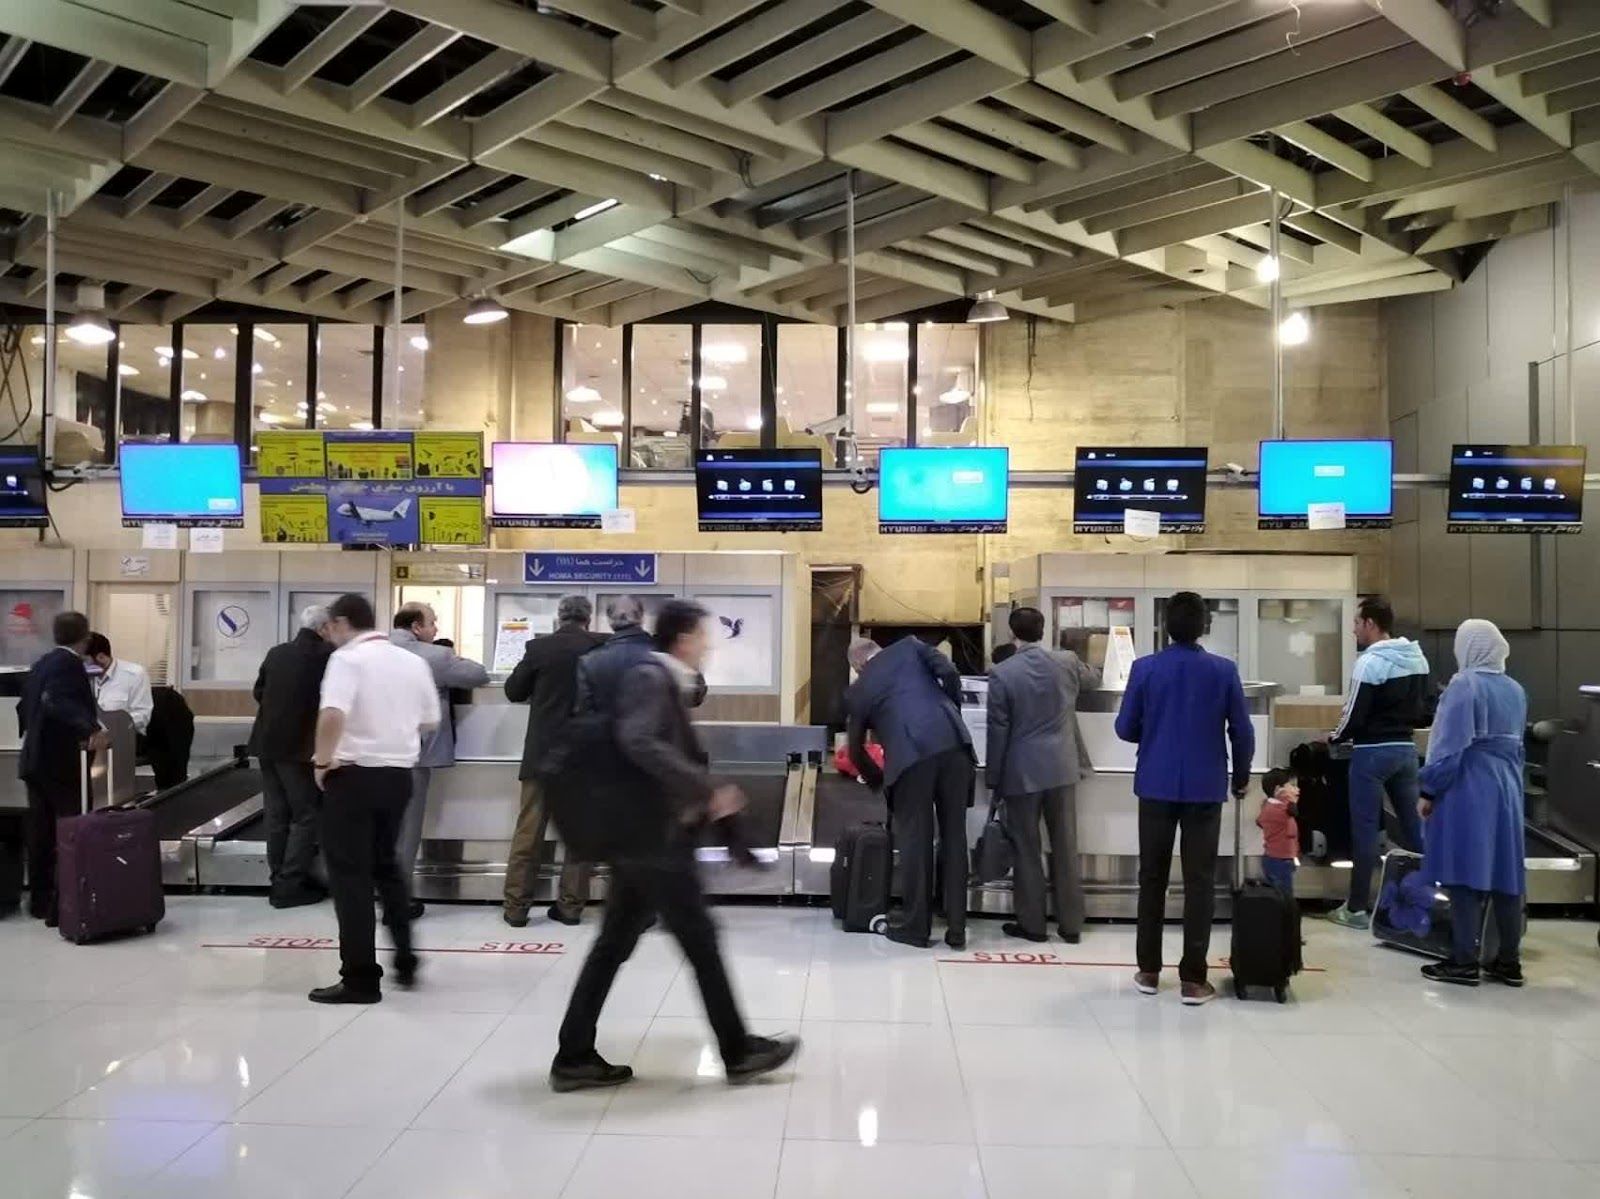 عکس | گافی که مسئولان فرودگاه مهرآباد دادند